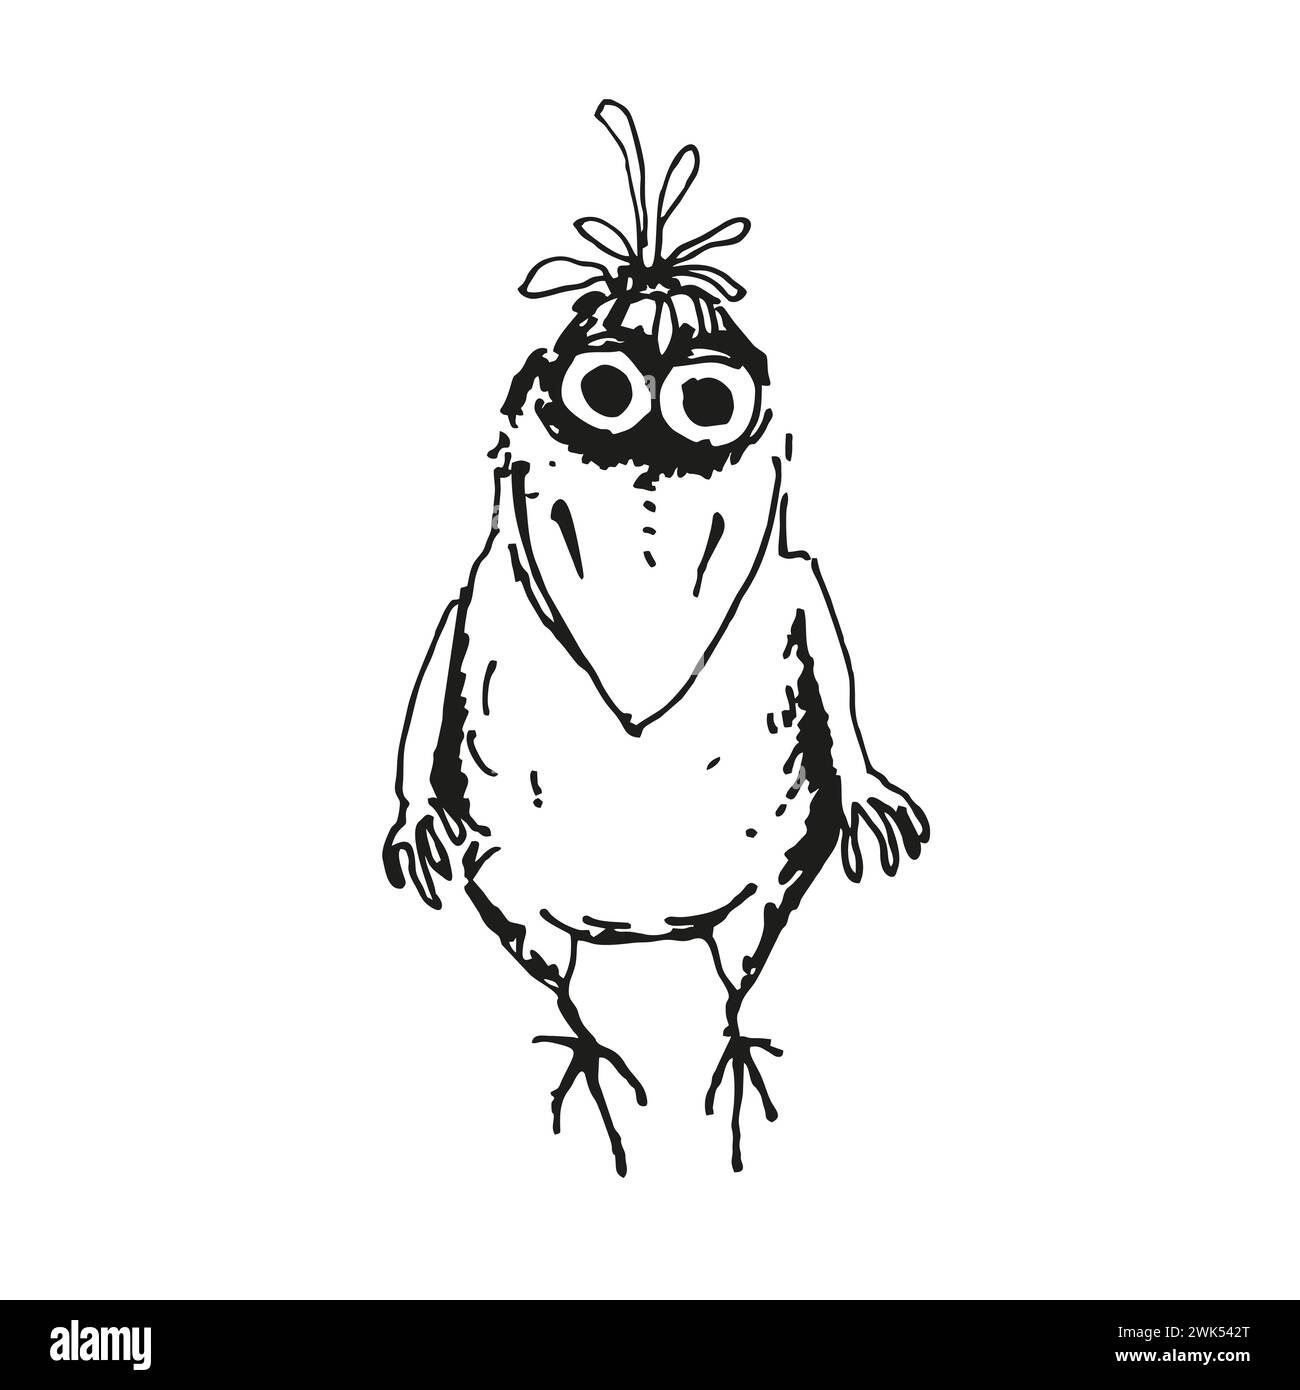 illustration vectorielle dessinée à la main de dessin animé drôle de corbeau, esquisse monochrome de corbeau oiseau mignon, silhouette encrée d'animal volant posant isolé sur blanc Illustration de Vecteur